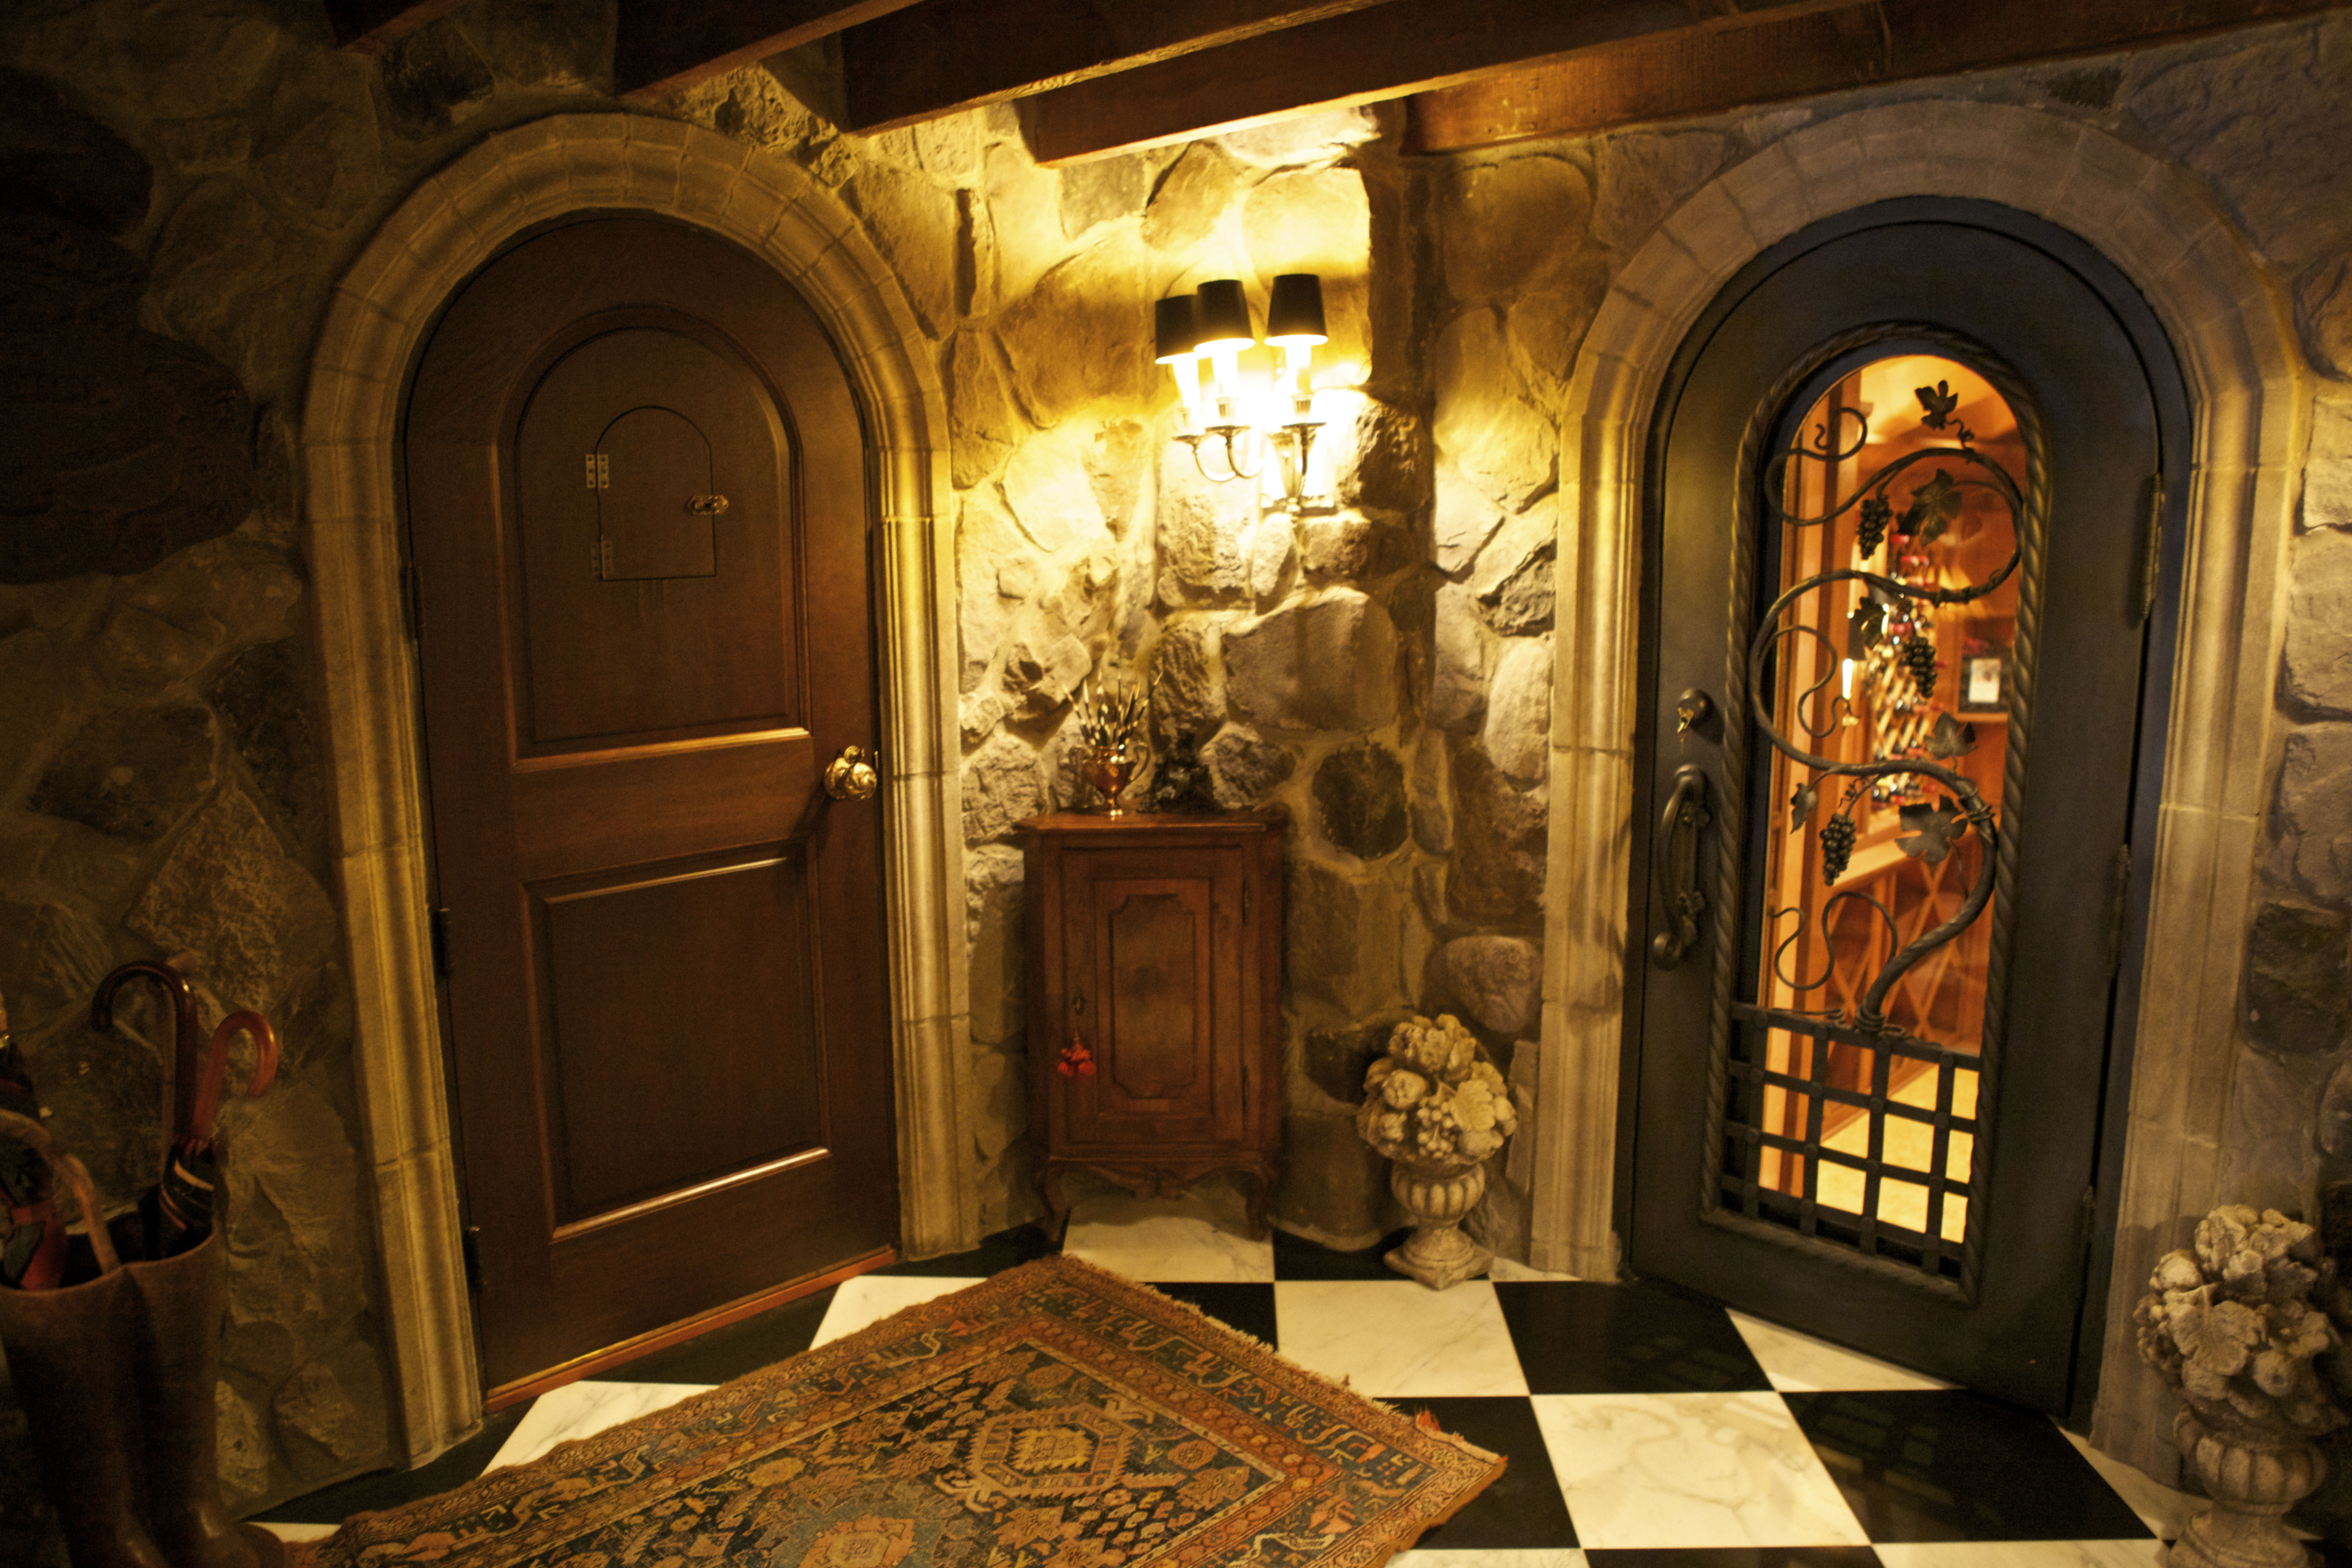 Entry door with speakeasy and wine cellar door